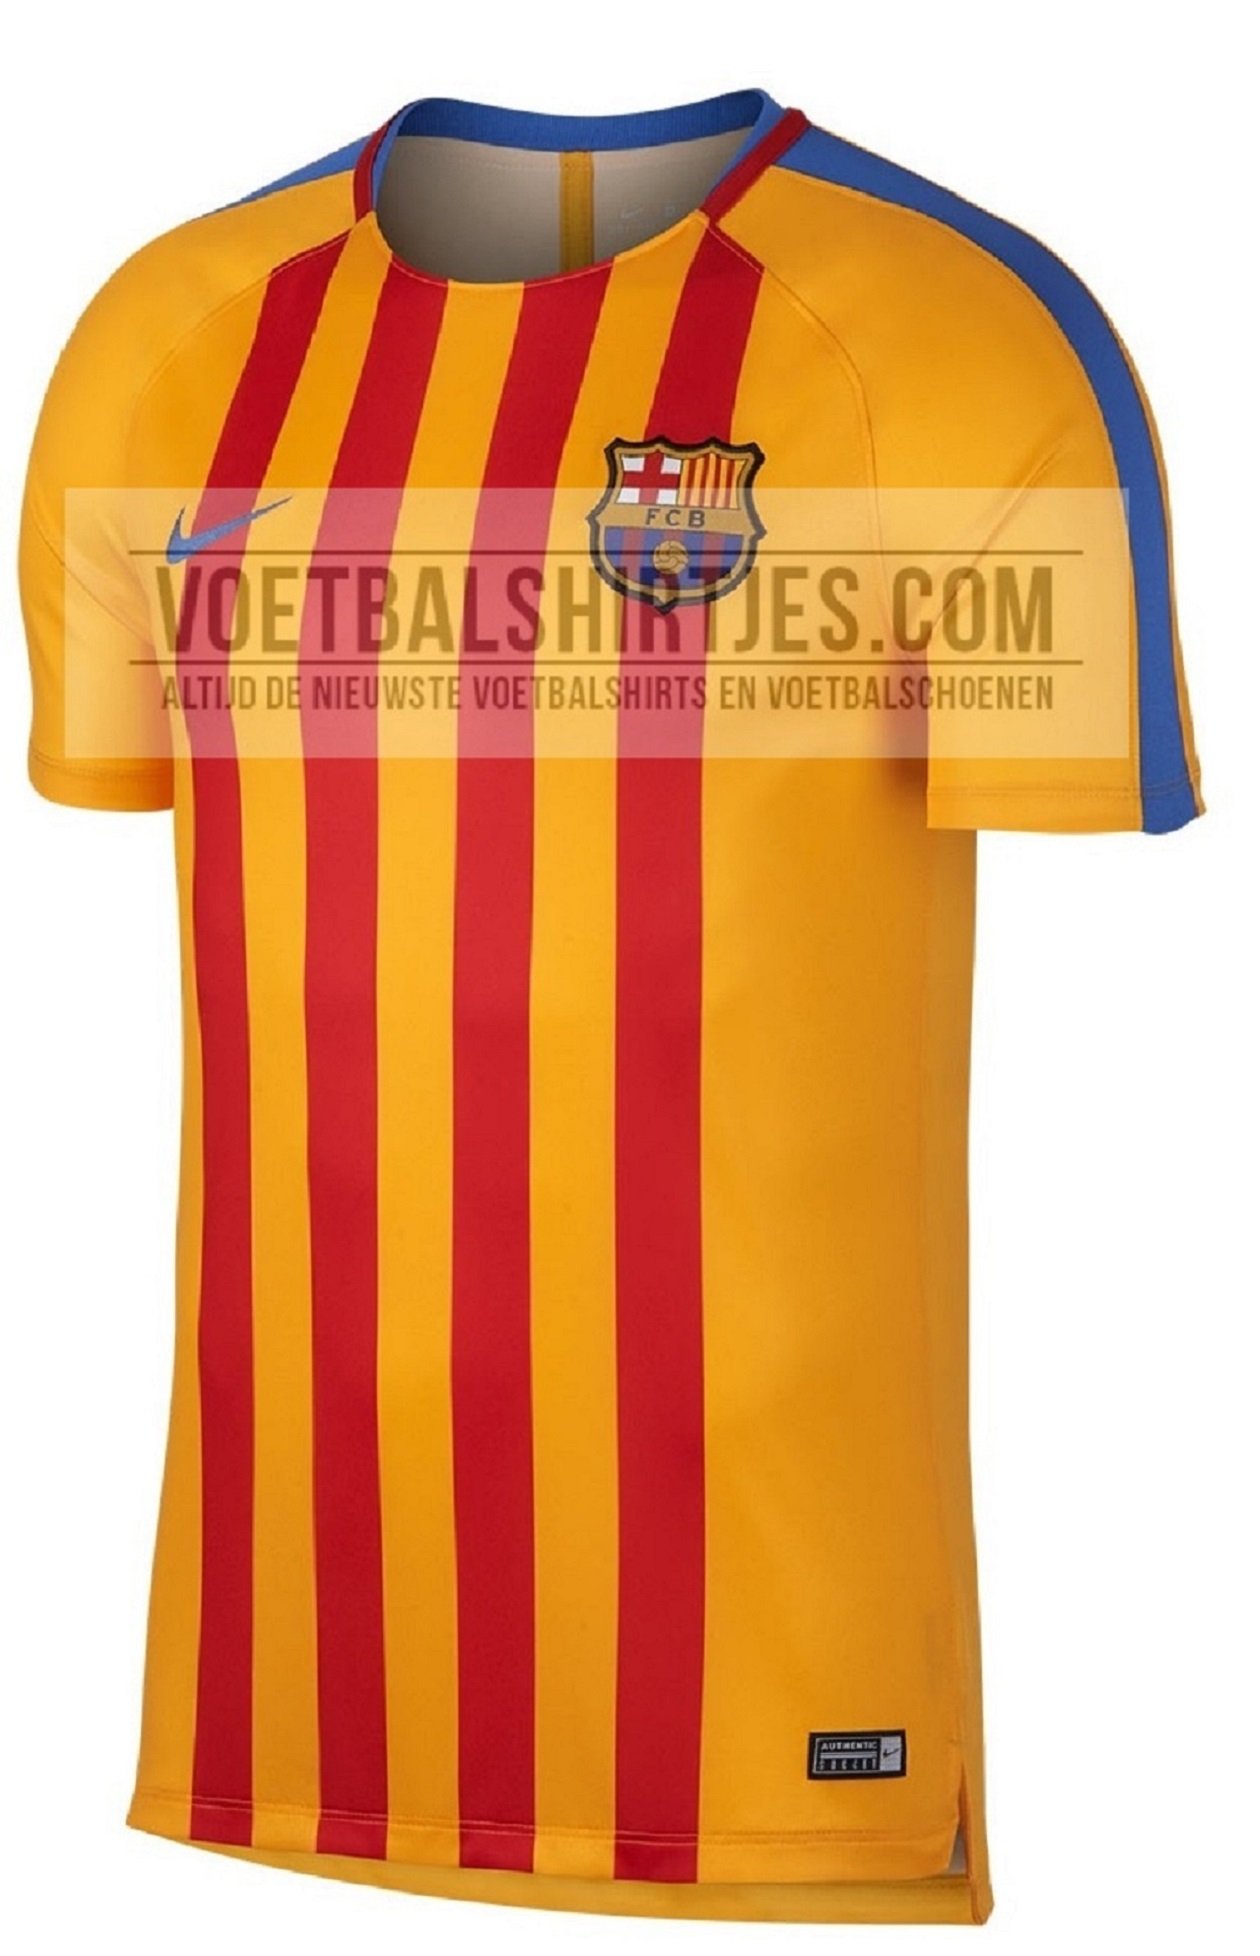 La camiseta de la senyera volverá al Barça